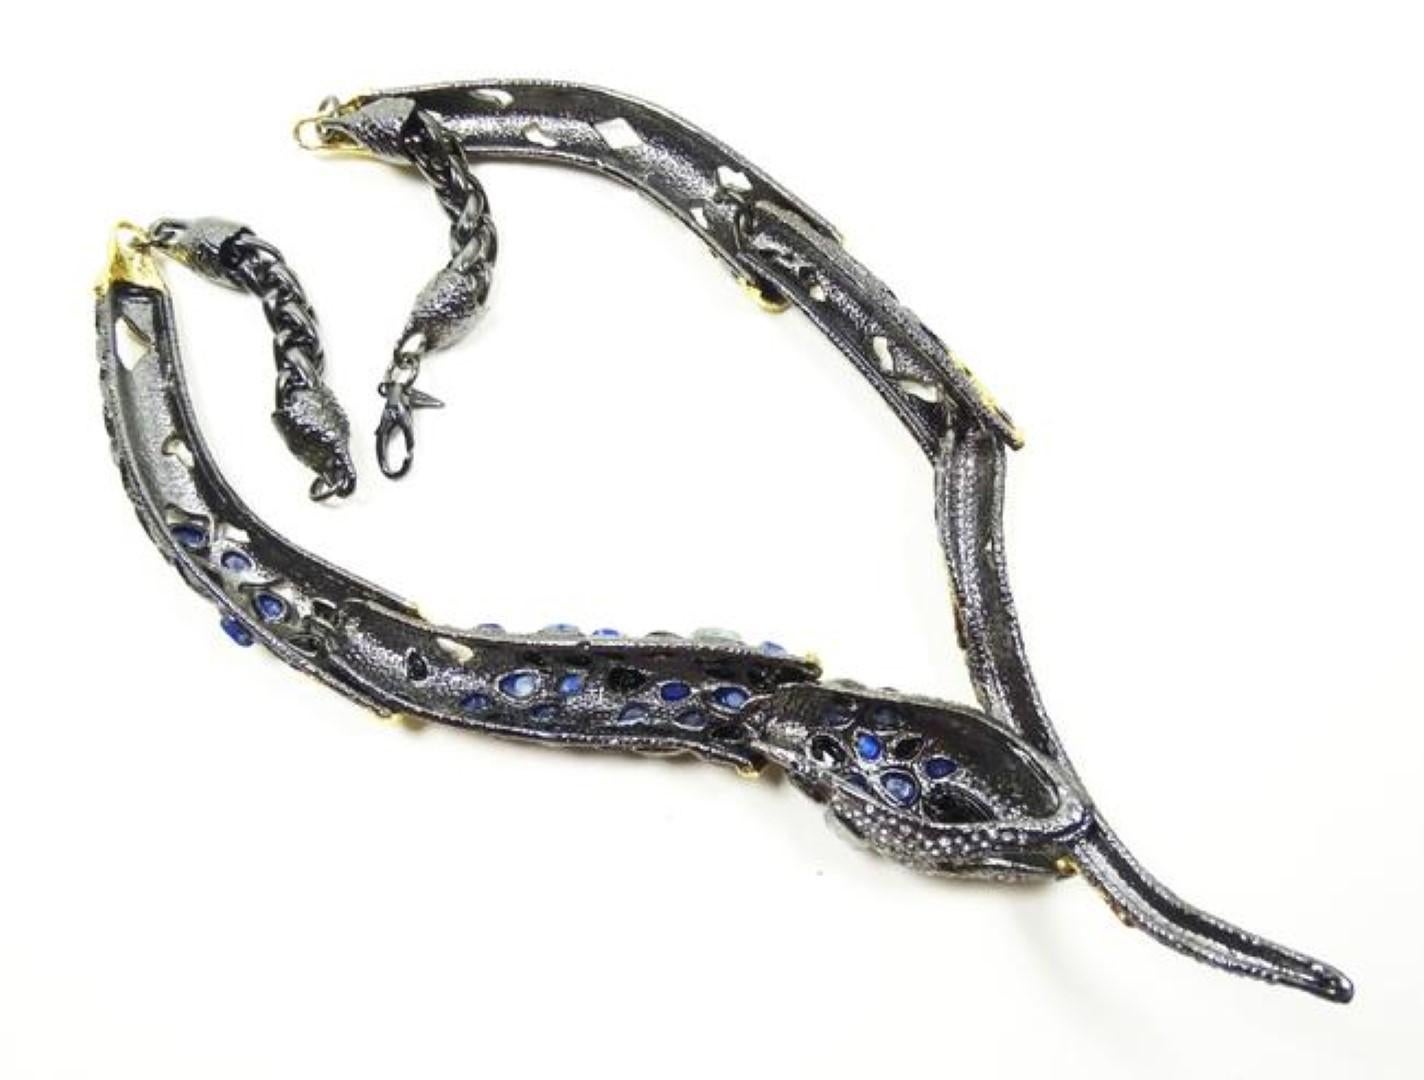 Women's Red Carpet Oscar Worthy Designer Alexis Bittar Snake Serpenti Statement Necklace